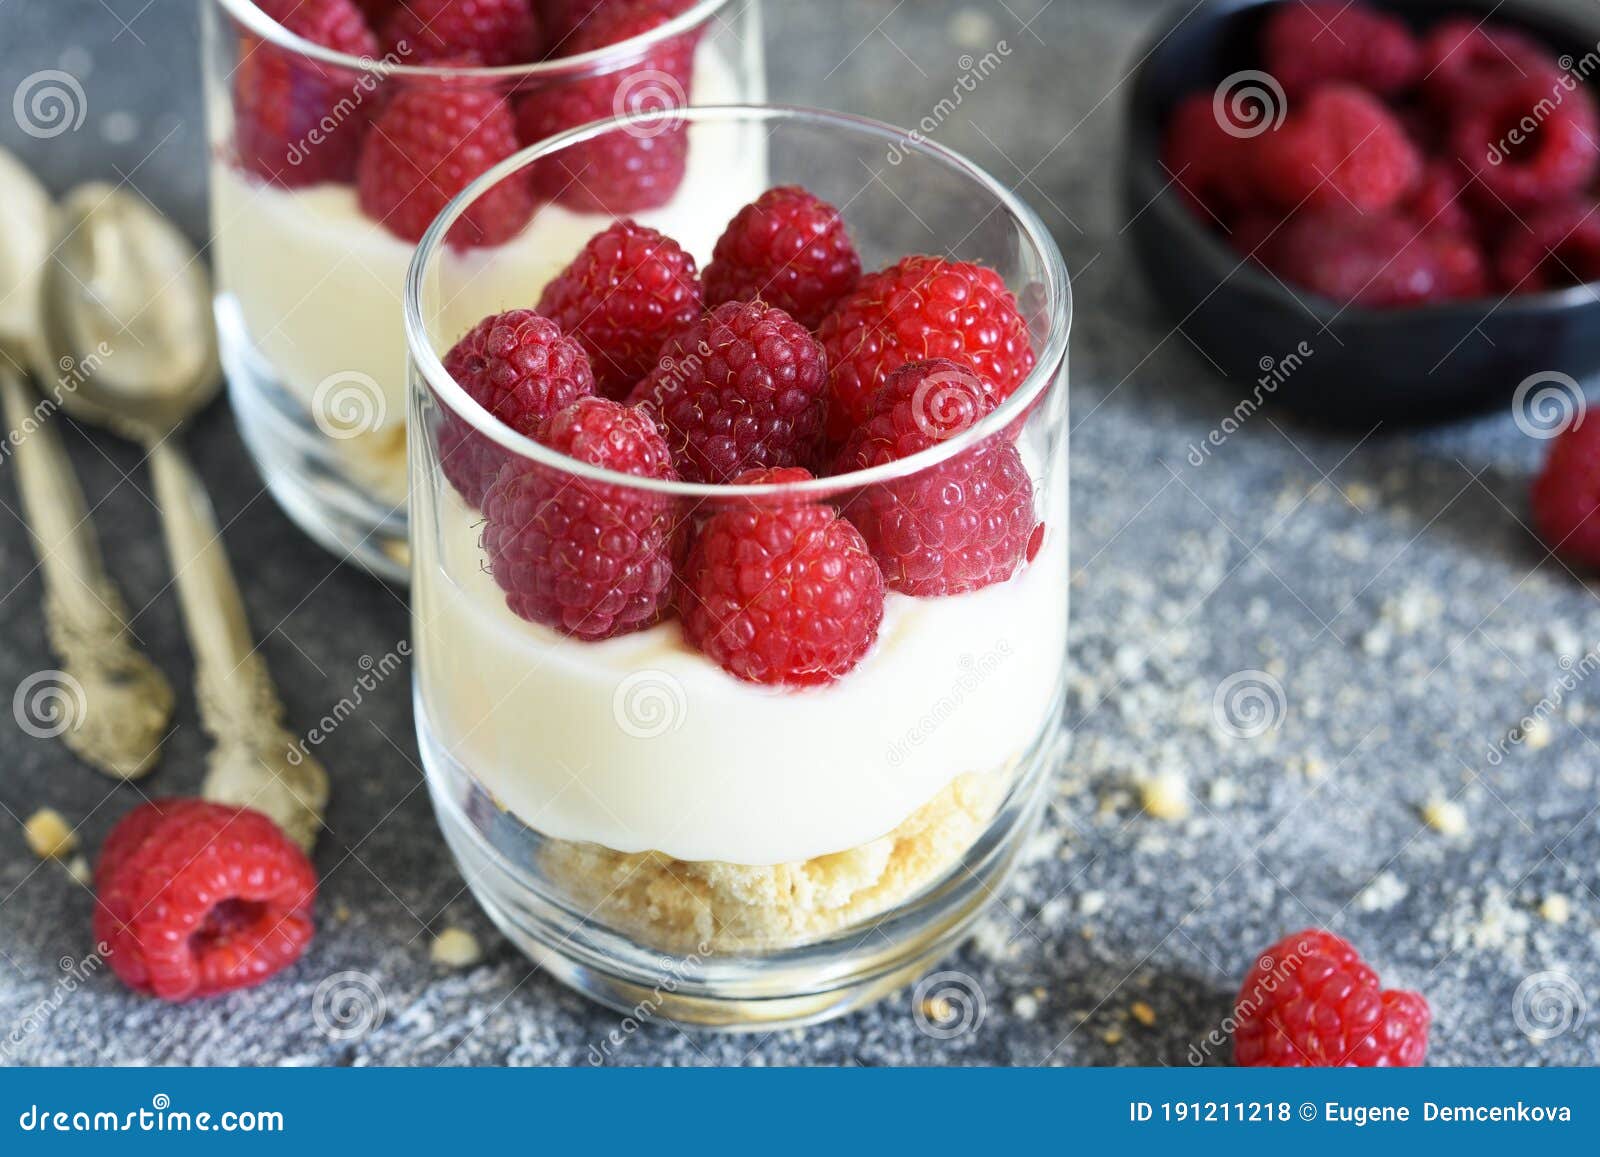 水果蛋糕上的黑莓与树莓 - 免费可商用图片 - cc0.cn